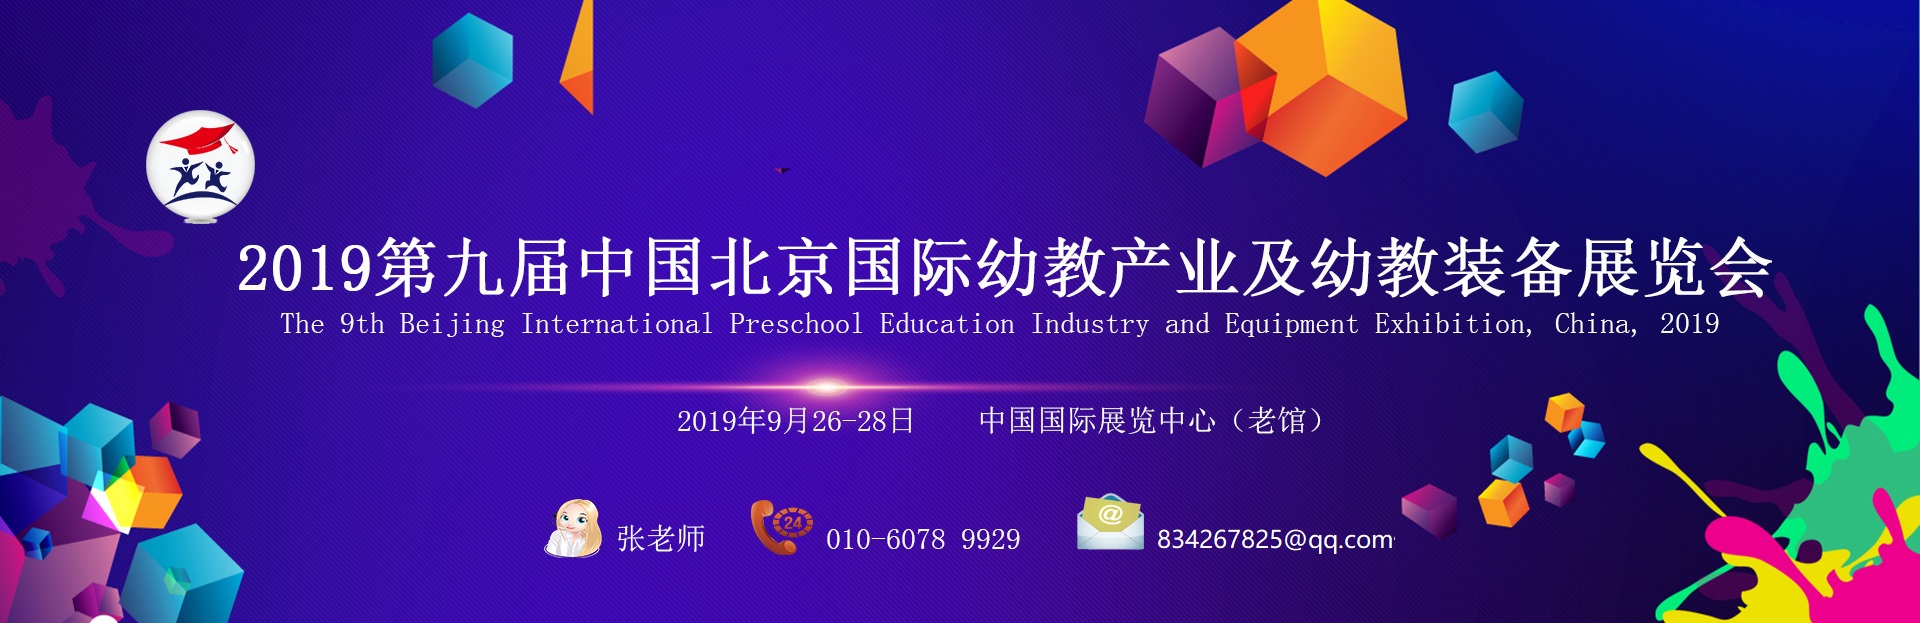 2019第九届中国(北京)国际幼教产业及幼教装备展览会时间-地点